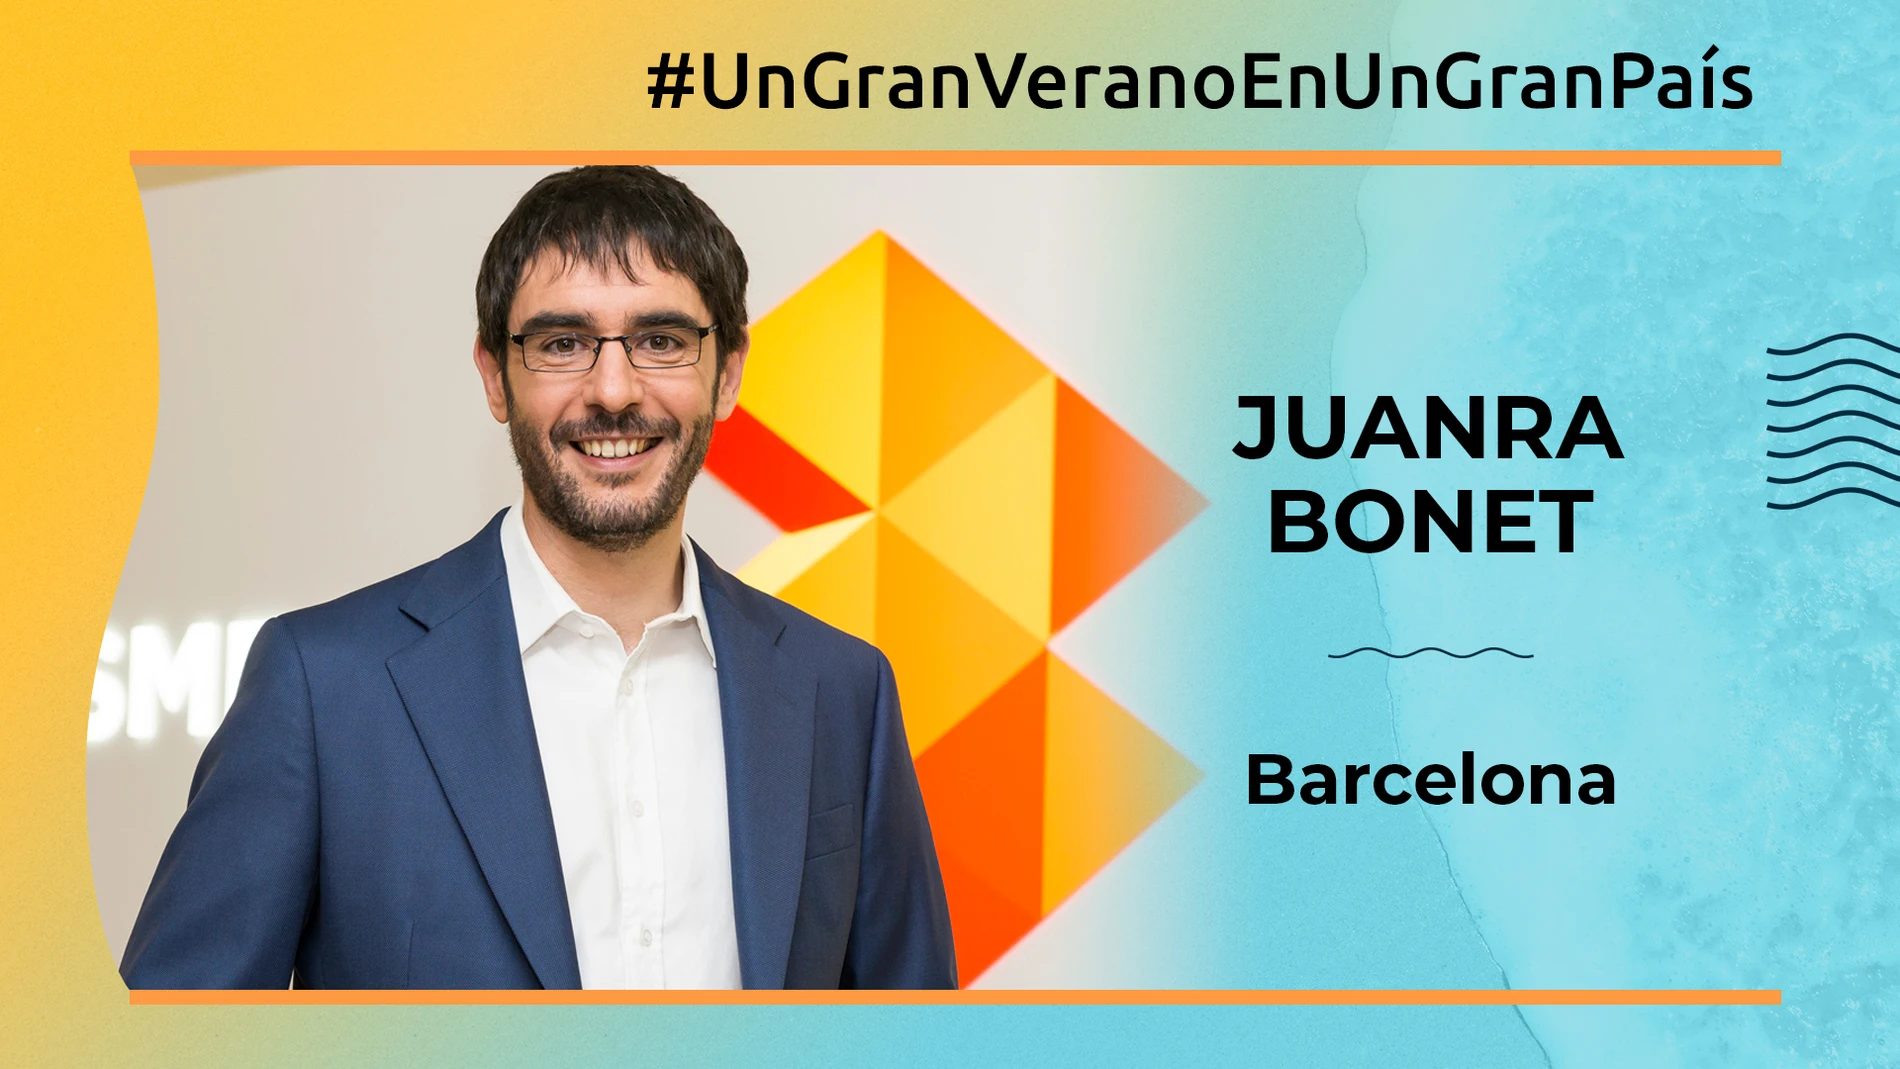 Juanra Bonet - Barcelona